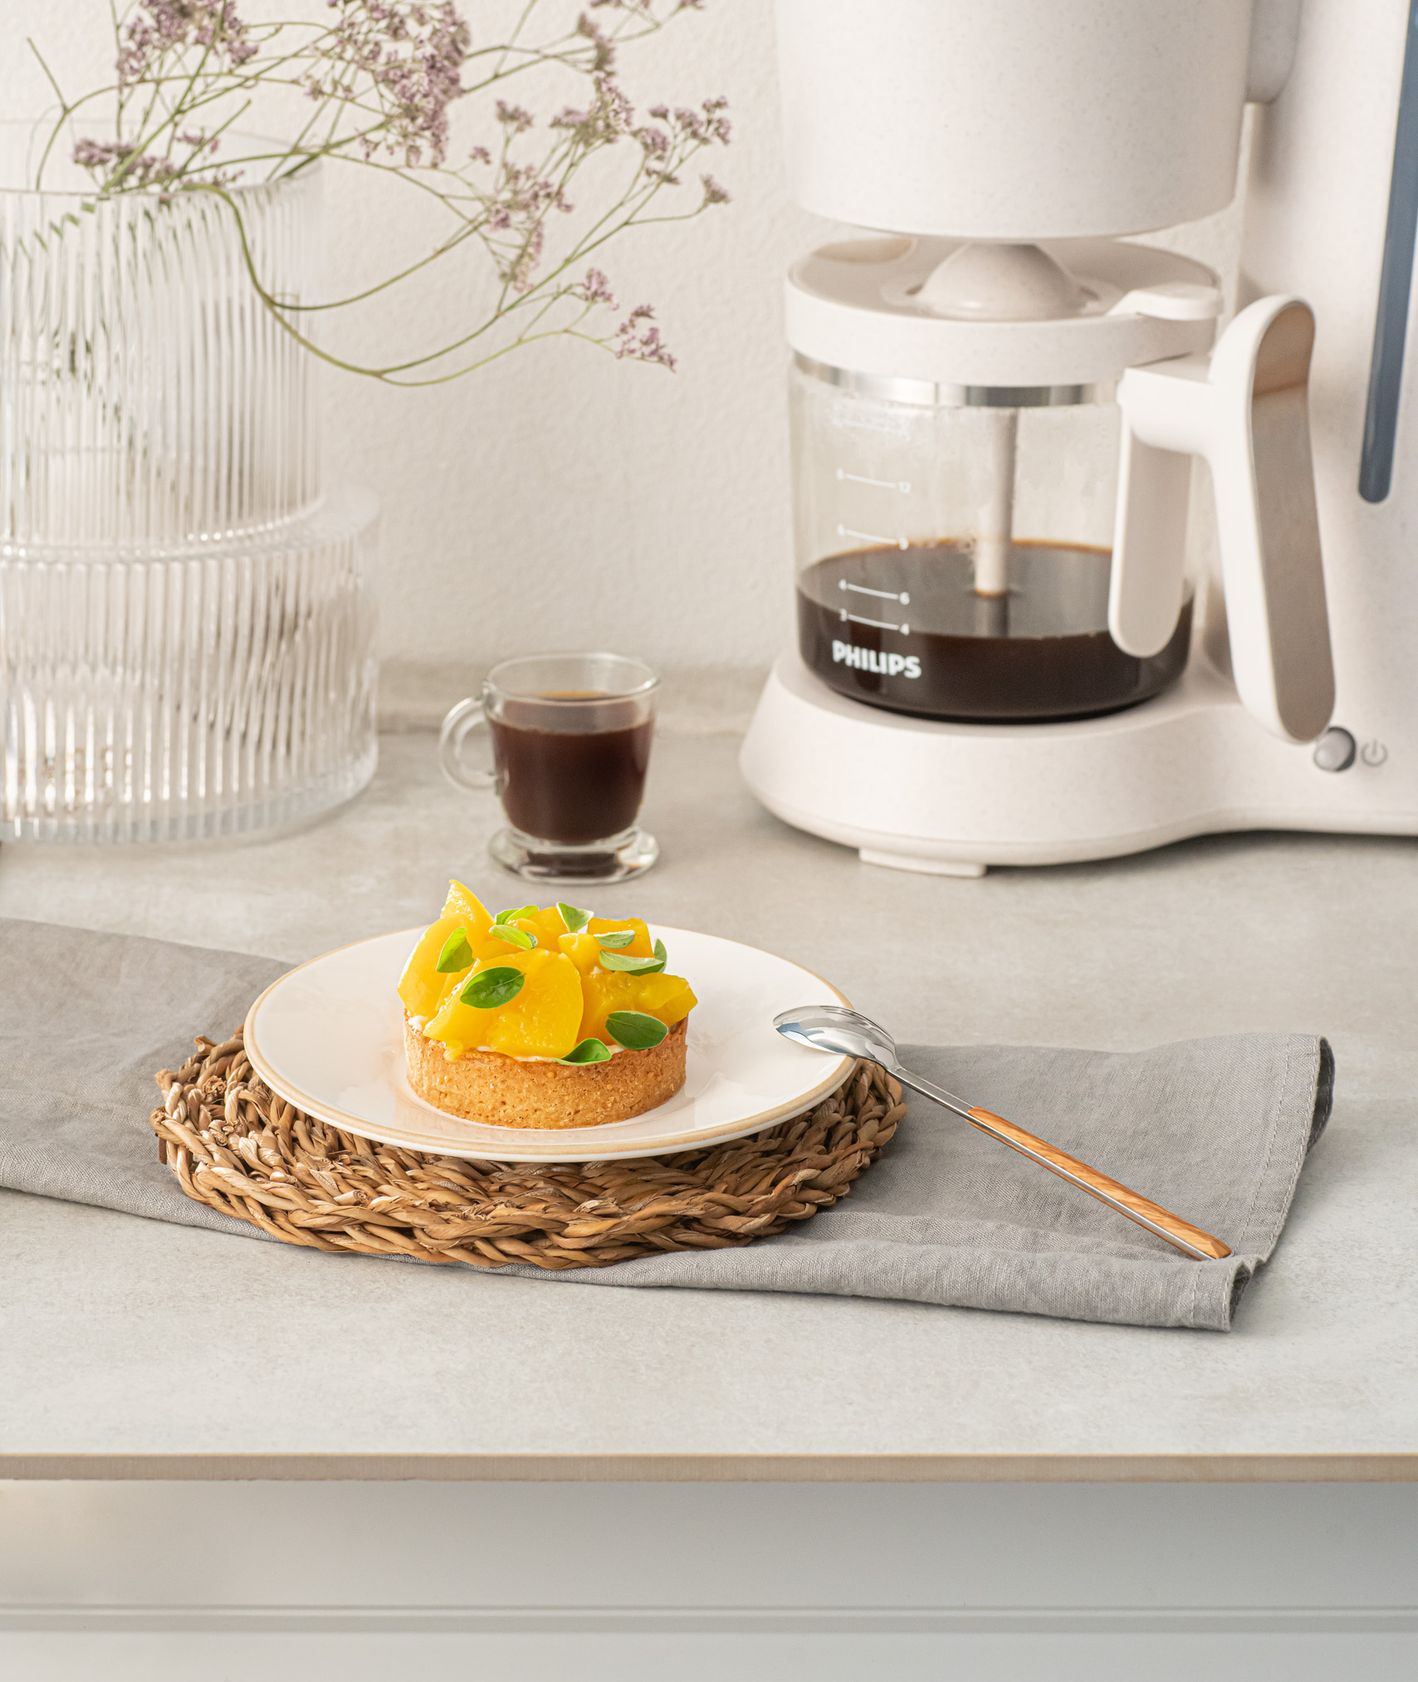 Szybkie brunche – kruche ciasto z brzoskwiniami i kremem śmietankowo-kawowym (fot. materiały prasowe)